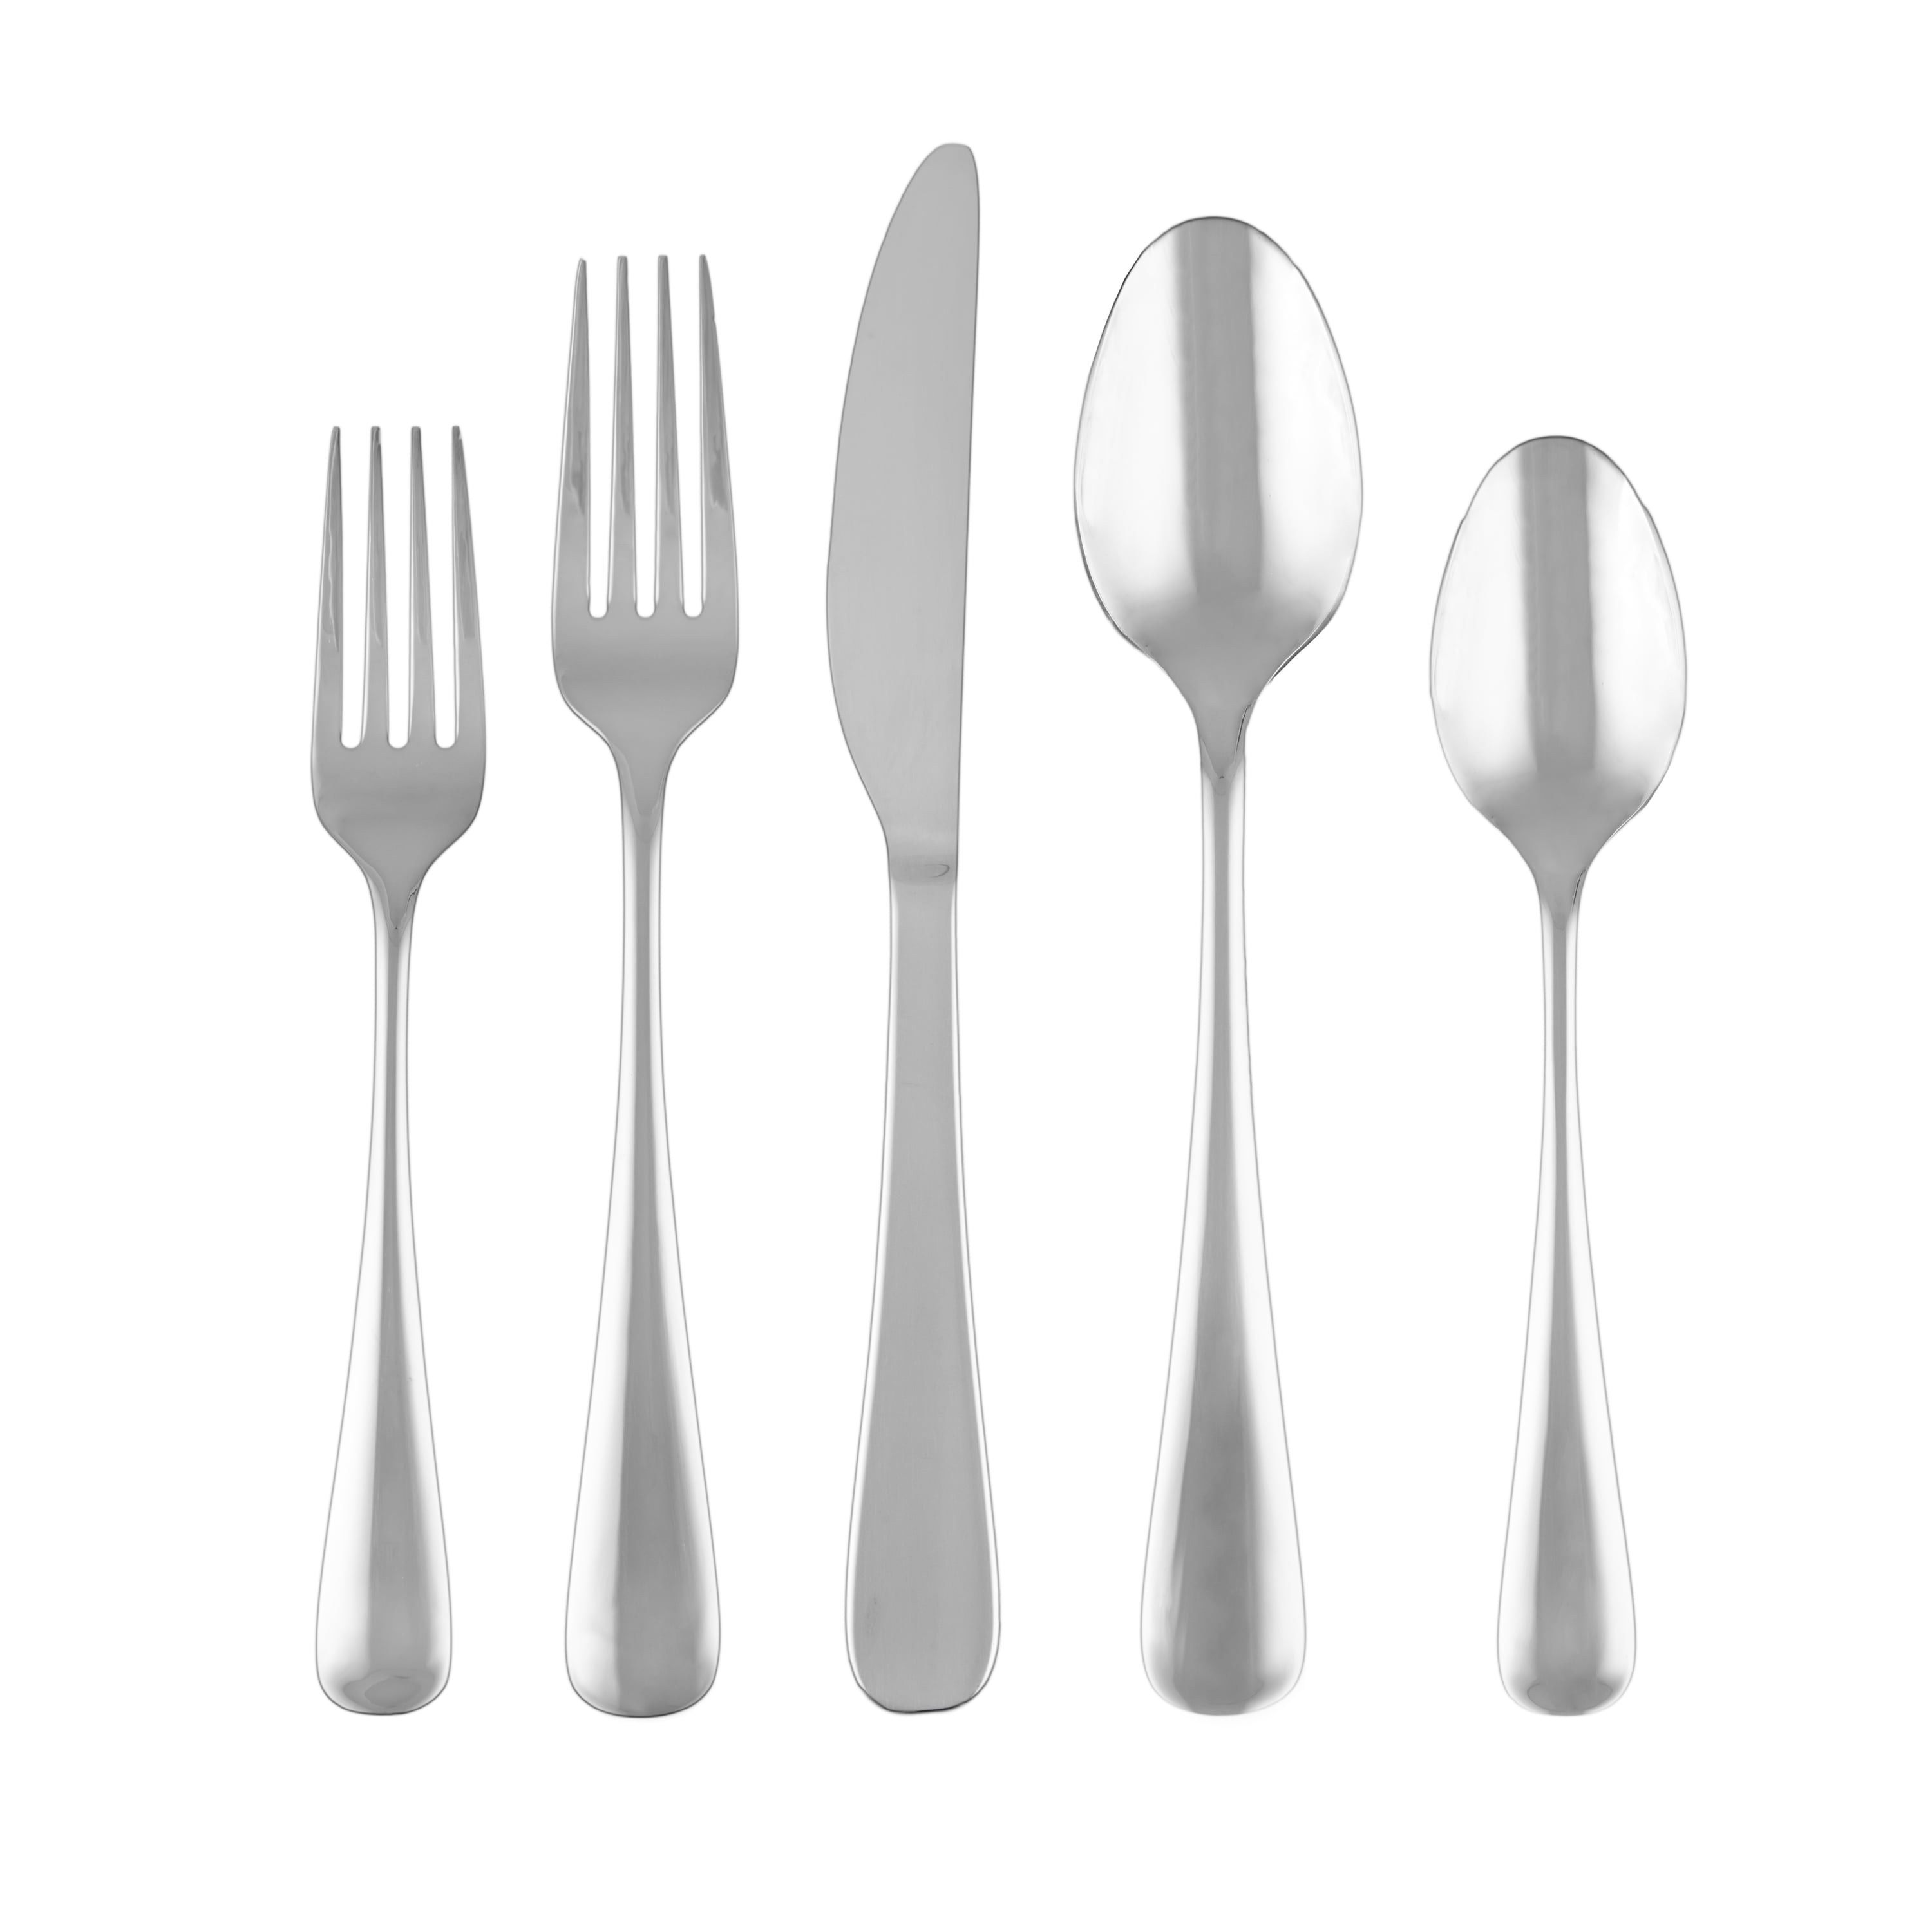 Buy The Silver Spoon Company Products Online in Alameda de los